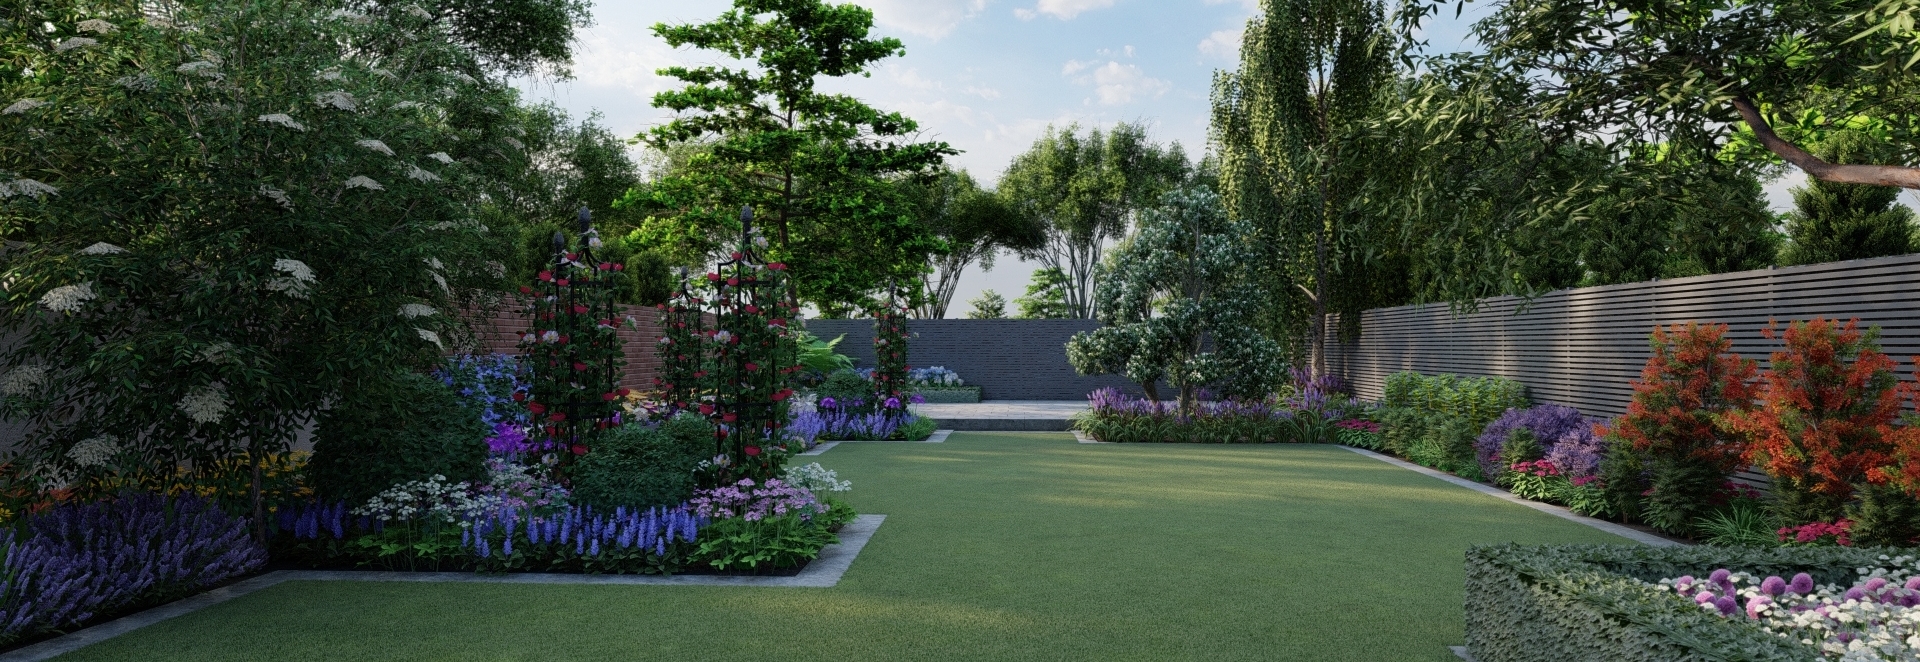 Garden Design Dublin 14 | 3D Design Visuals for large Family Garden in Rathfarnham